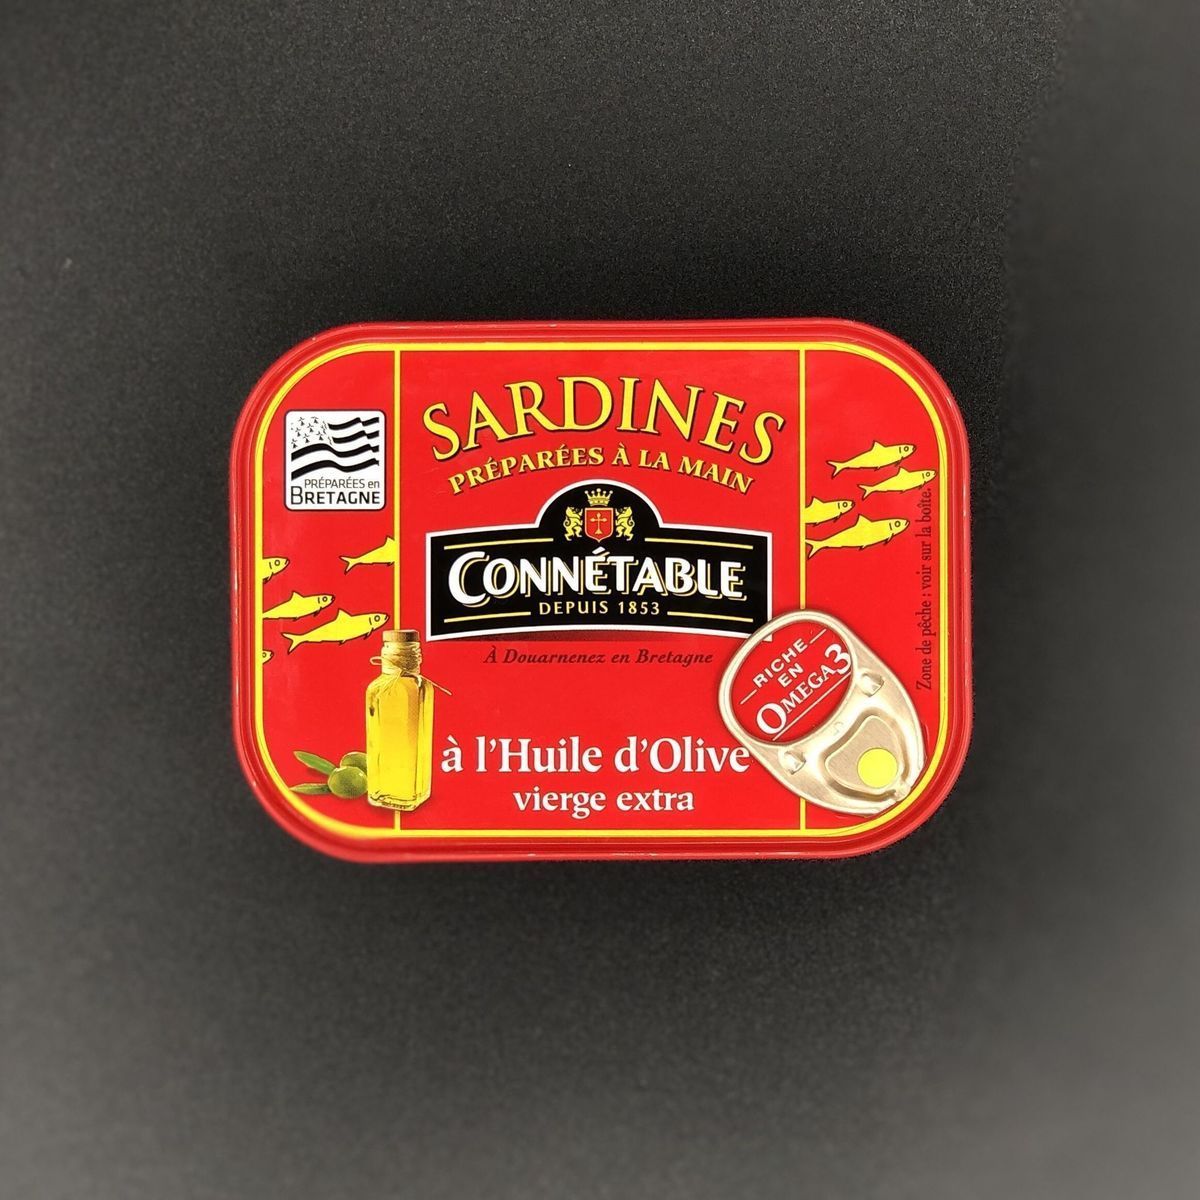 Сардины Connetable в оливковом масле-экстра 115г